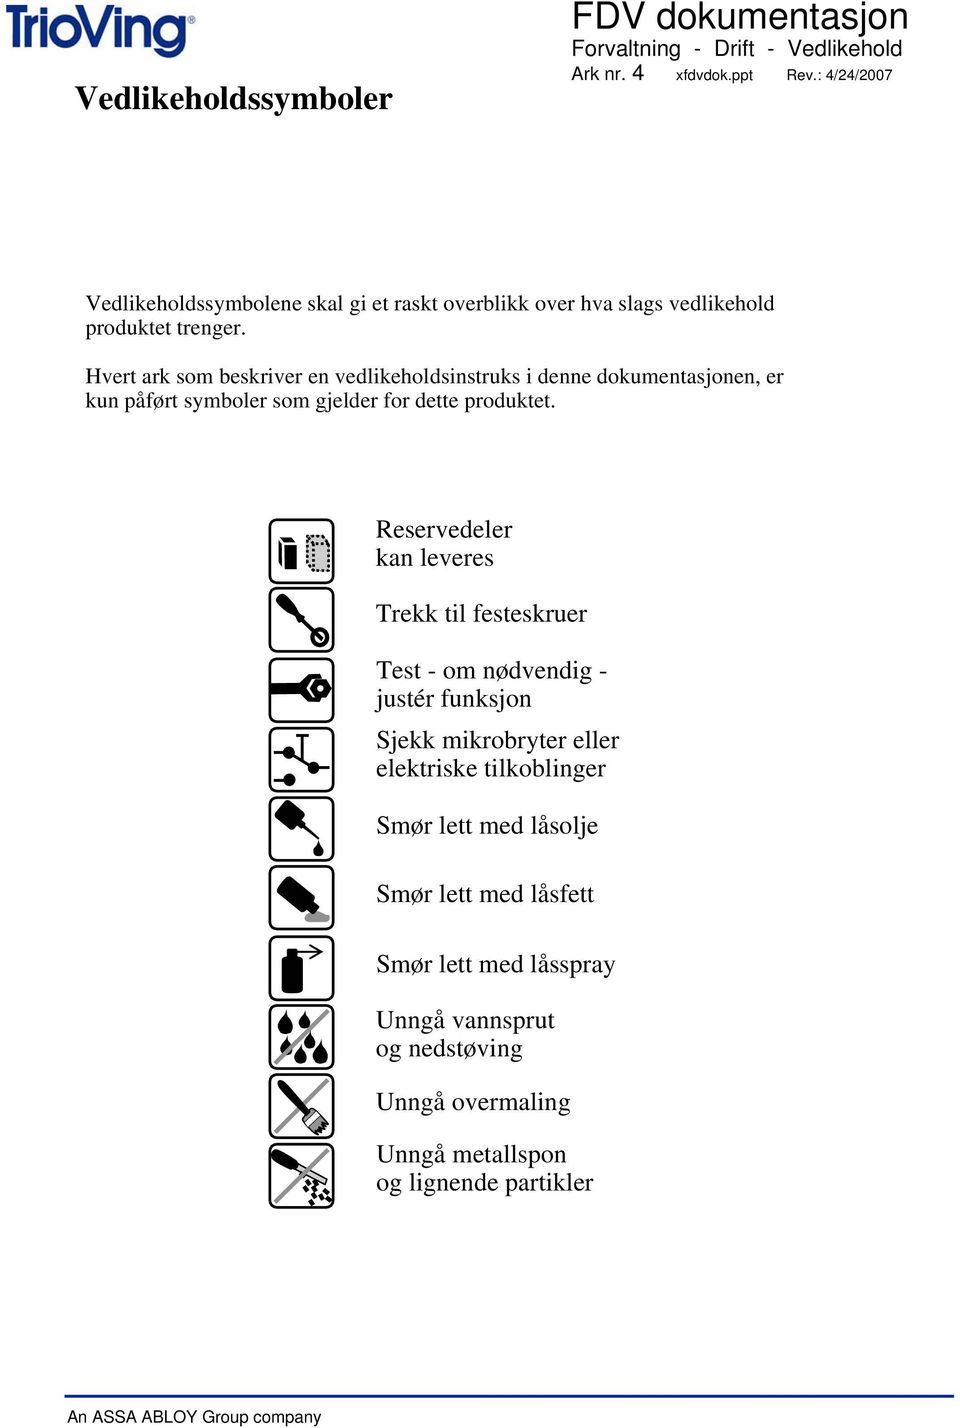 Hvert ark som beskriver en vedlikeholdsinstruks i denne dokumentasjonen, er kun påført symboler som gjelder for dette produktet.